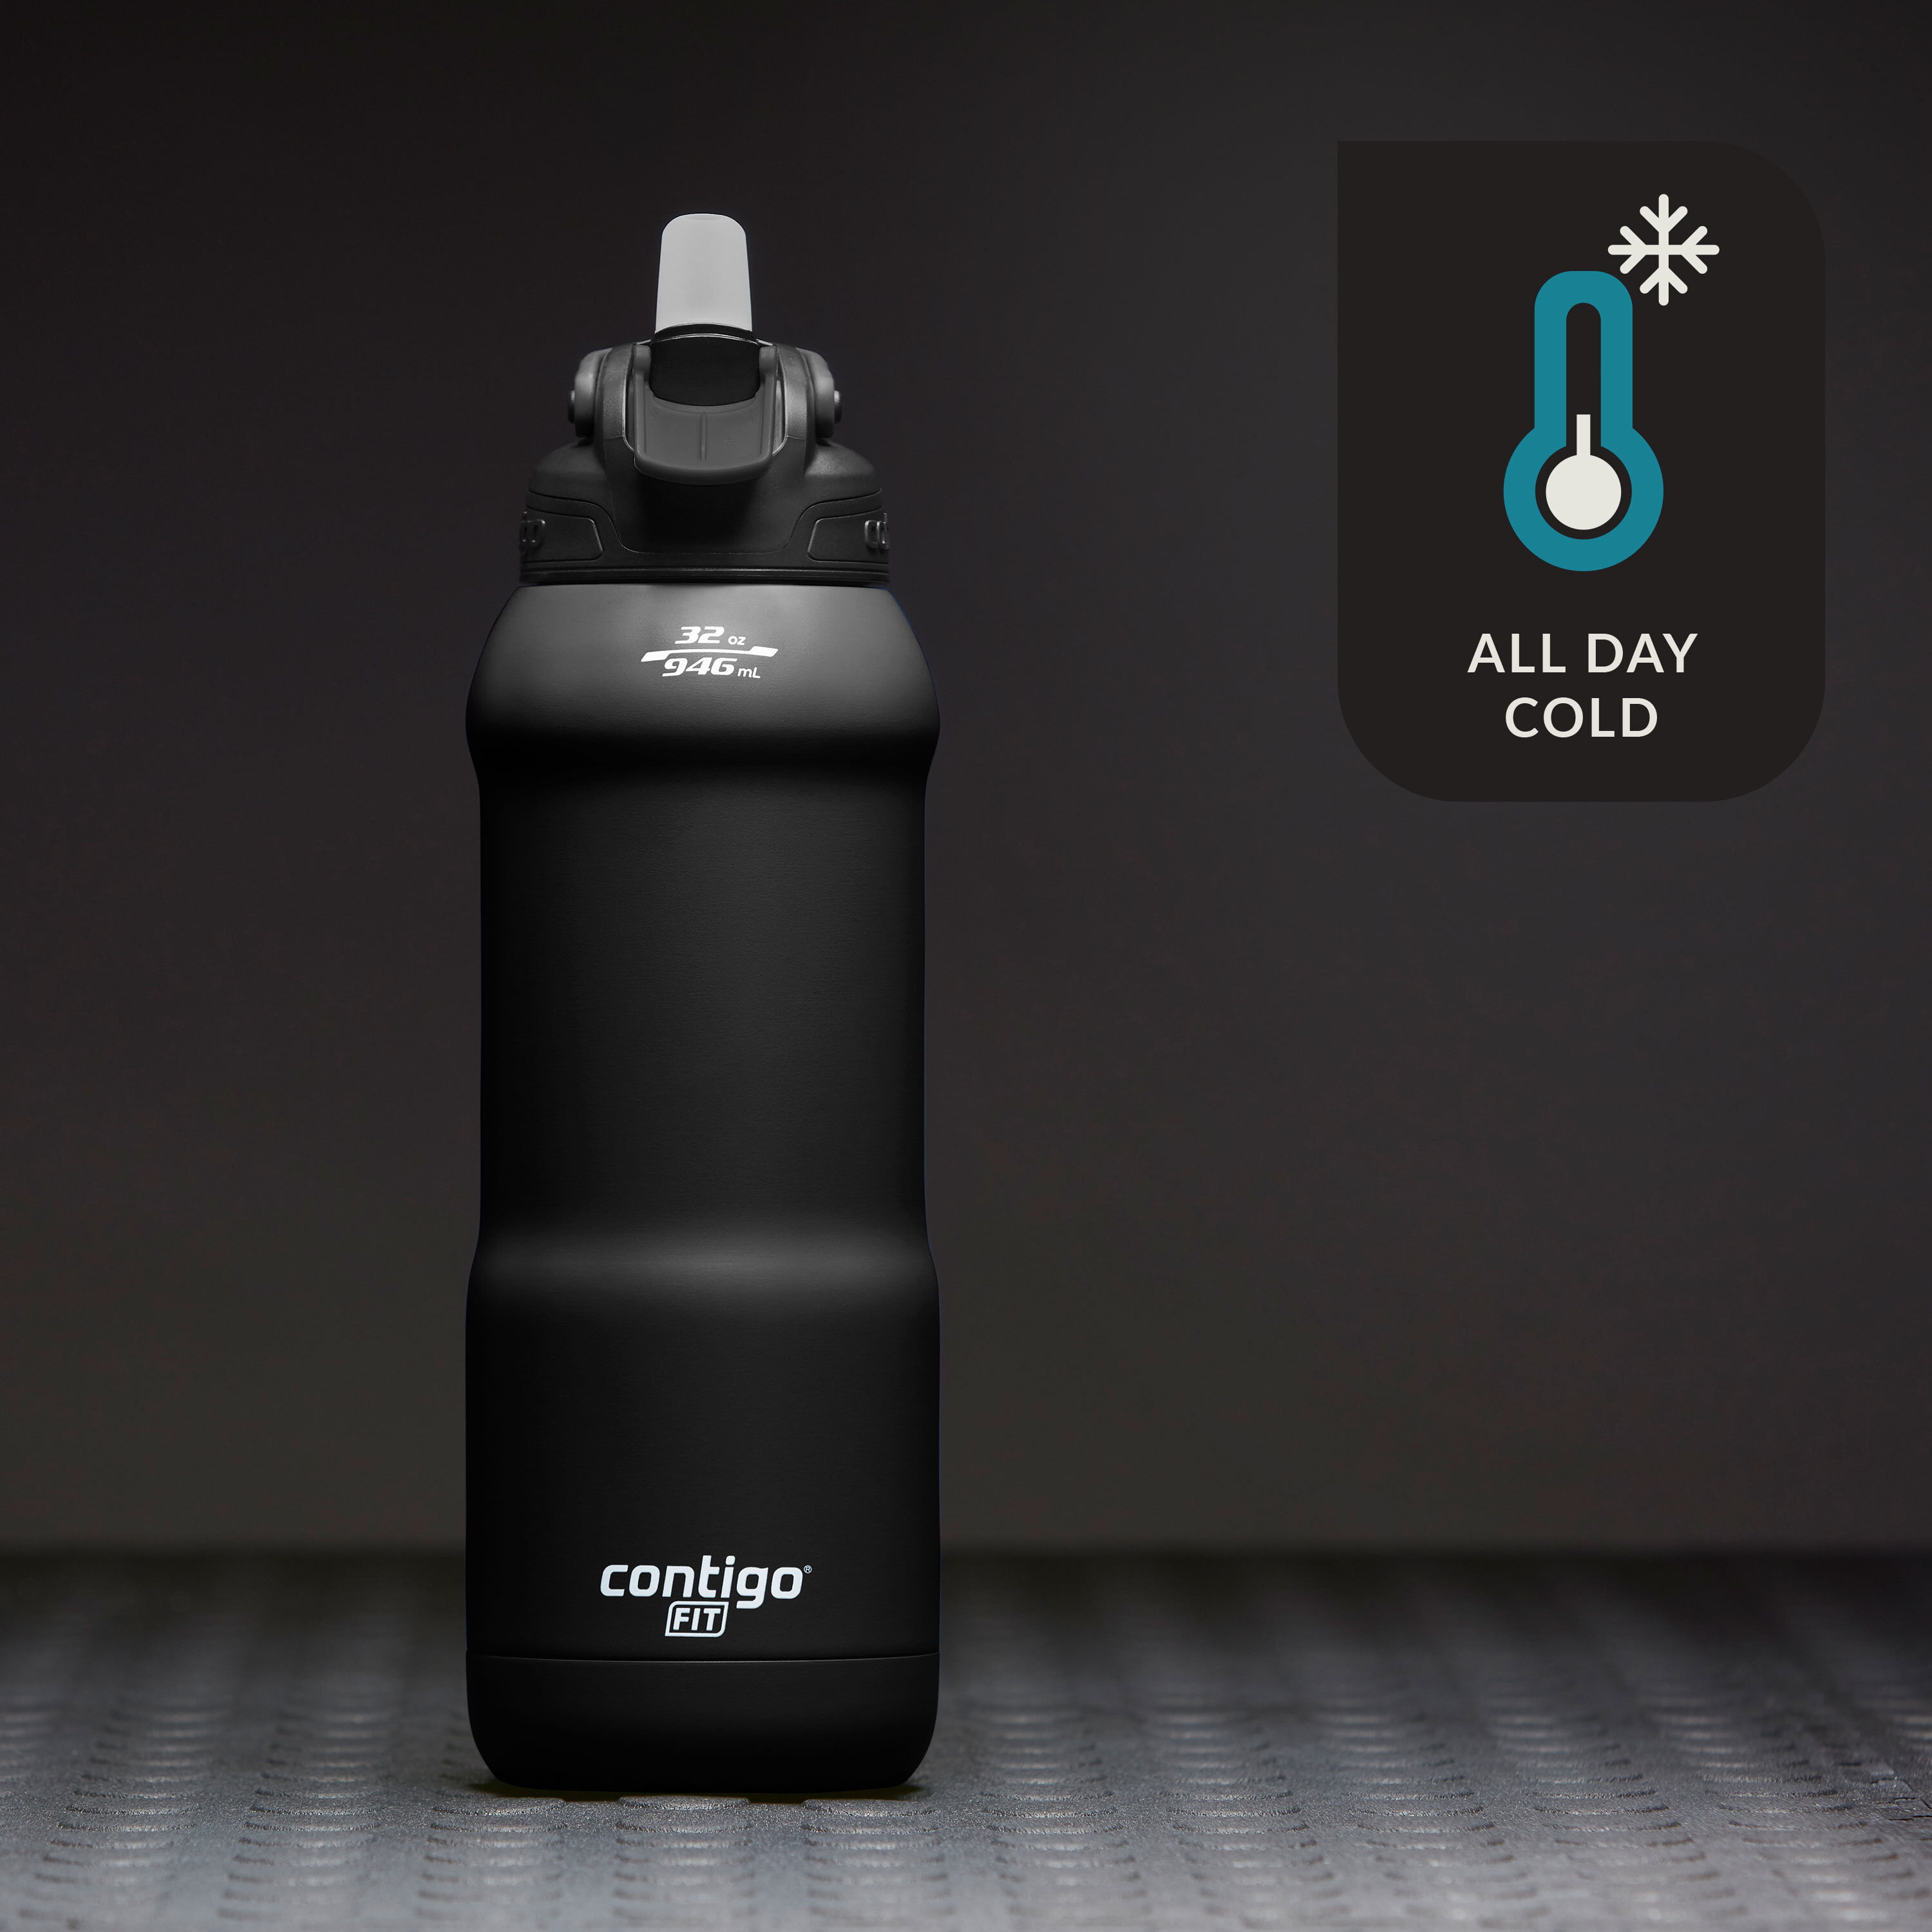 Contigo 32 oz. Fit Autospout Straw Water Bottle - Licorice, Size: 32 fl oz, Black